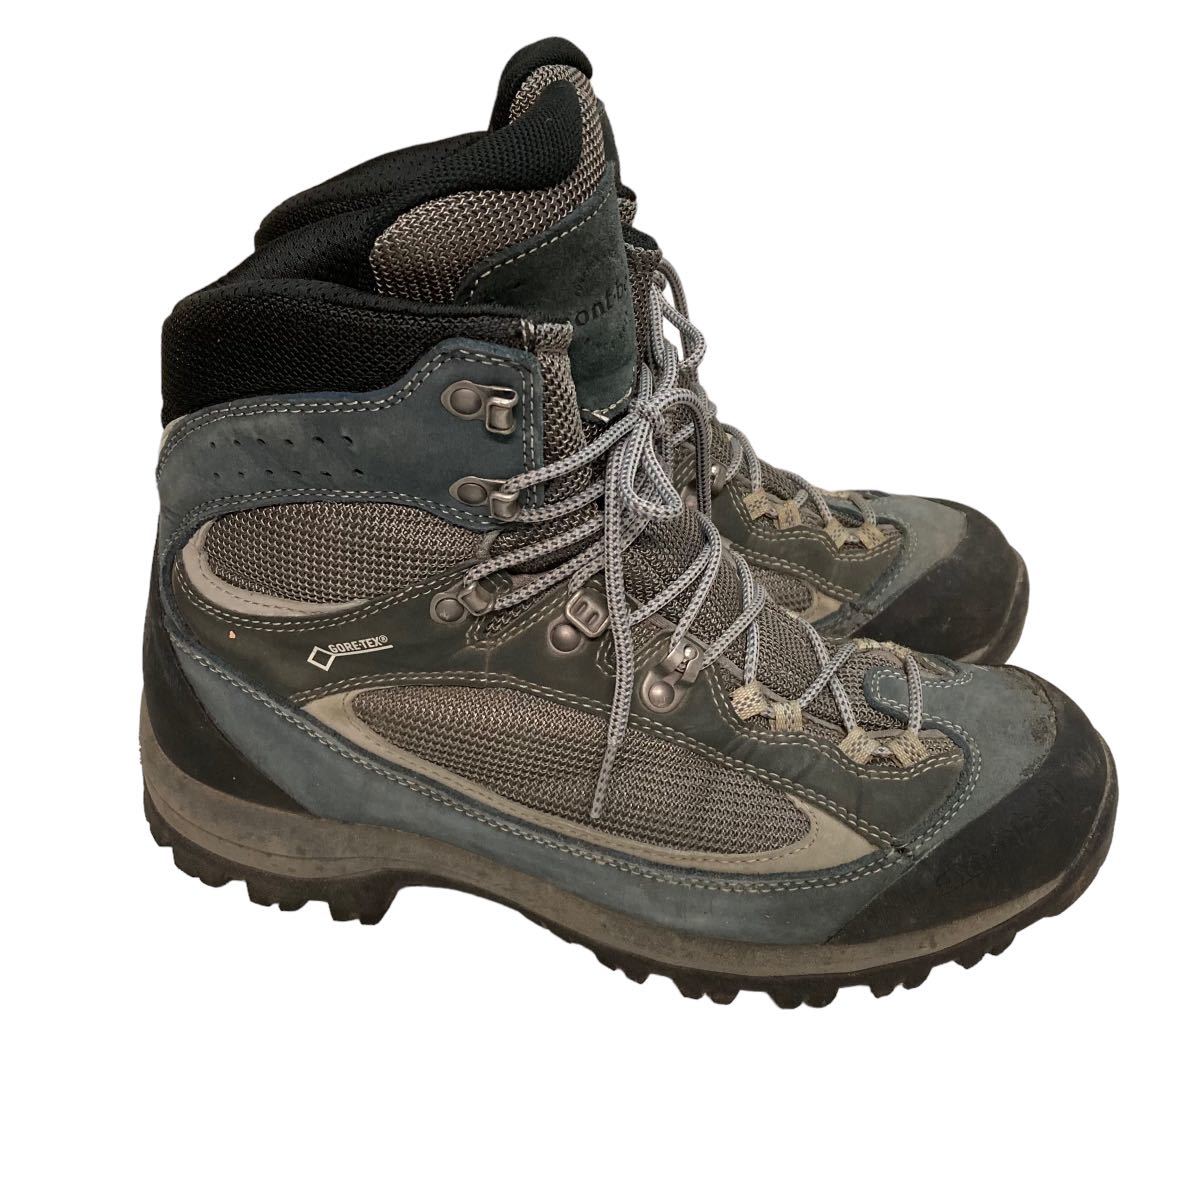 BC349 montbell モンベル トレッキングシューズ 登山靴 US8.5 26.5cm グレー ブラック GORE-TEX ゴアテックス_画像3